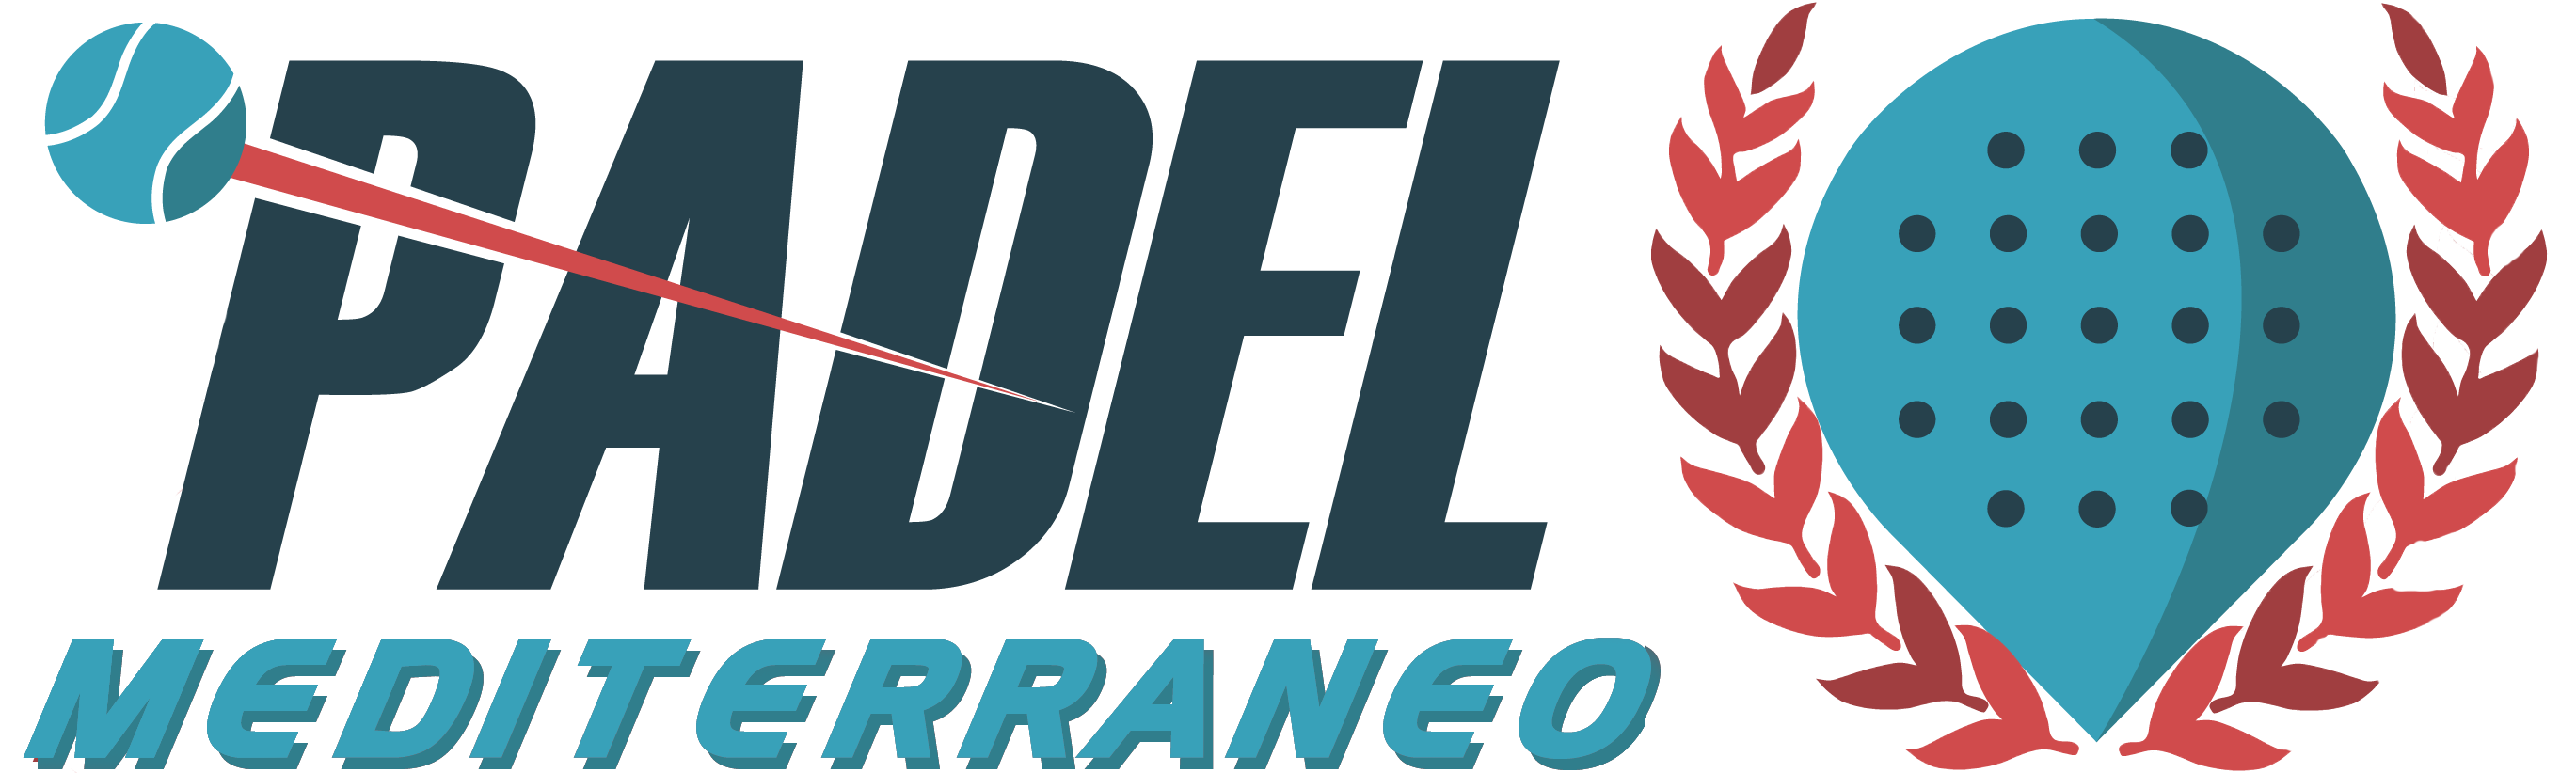 Torneo Harley-Davidson Almería del 4 al 7 de Octubre del 2018 | Padel Mediterráneo